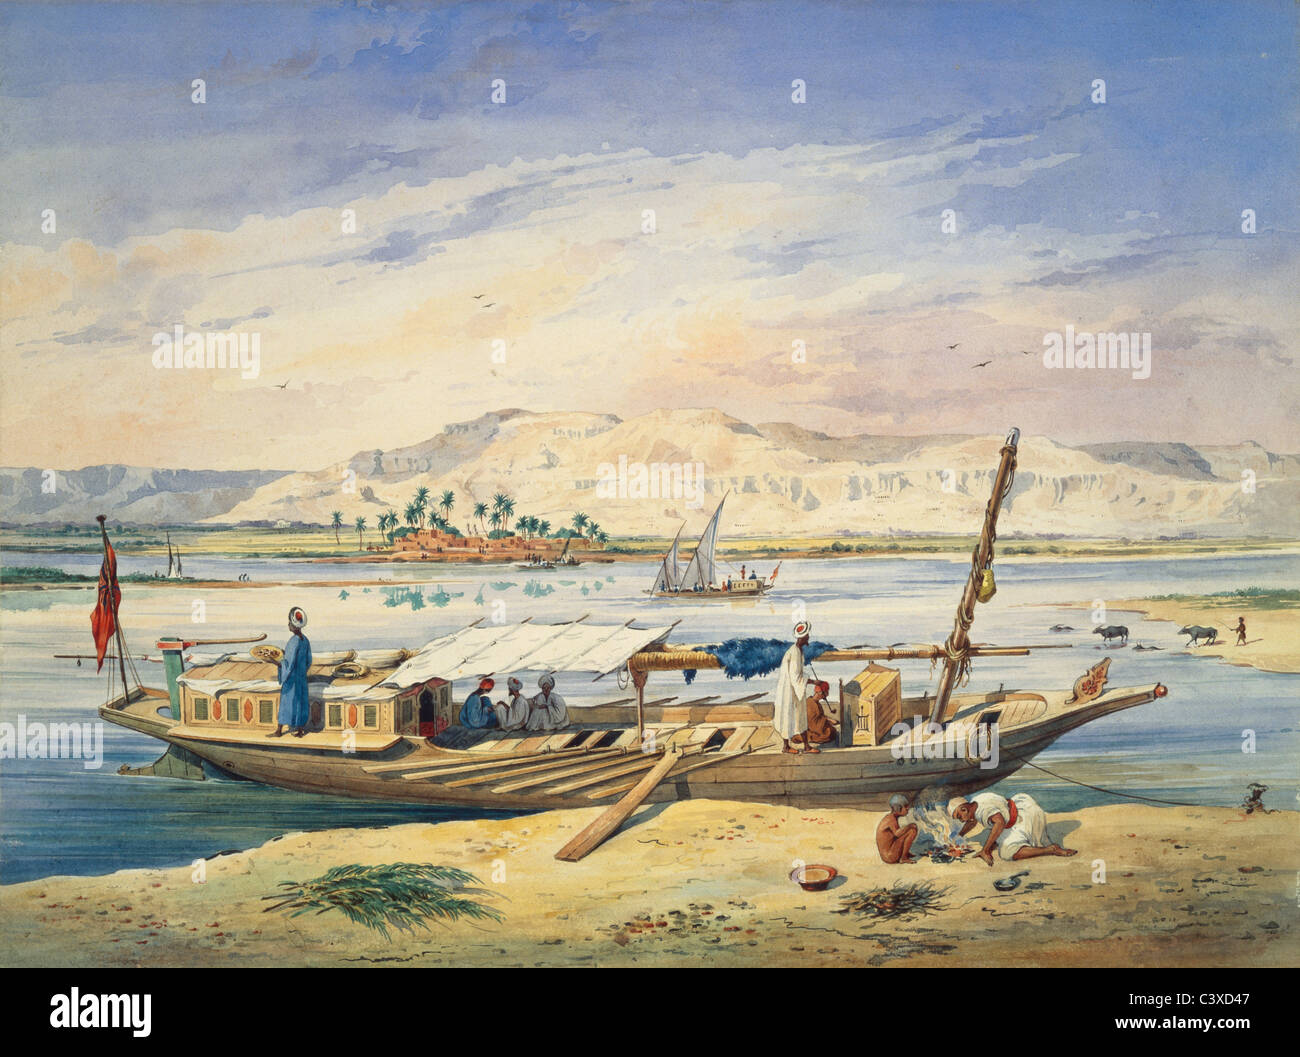 Kanja sur le Nil à Louxor, par Achille-Constant-Theodore Emile Prisse d'Avennes. L'Egypte, 19e siècle Banque D'Images